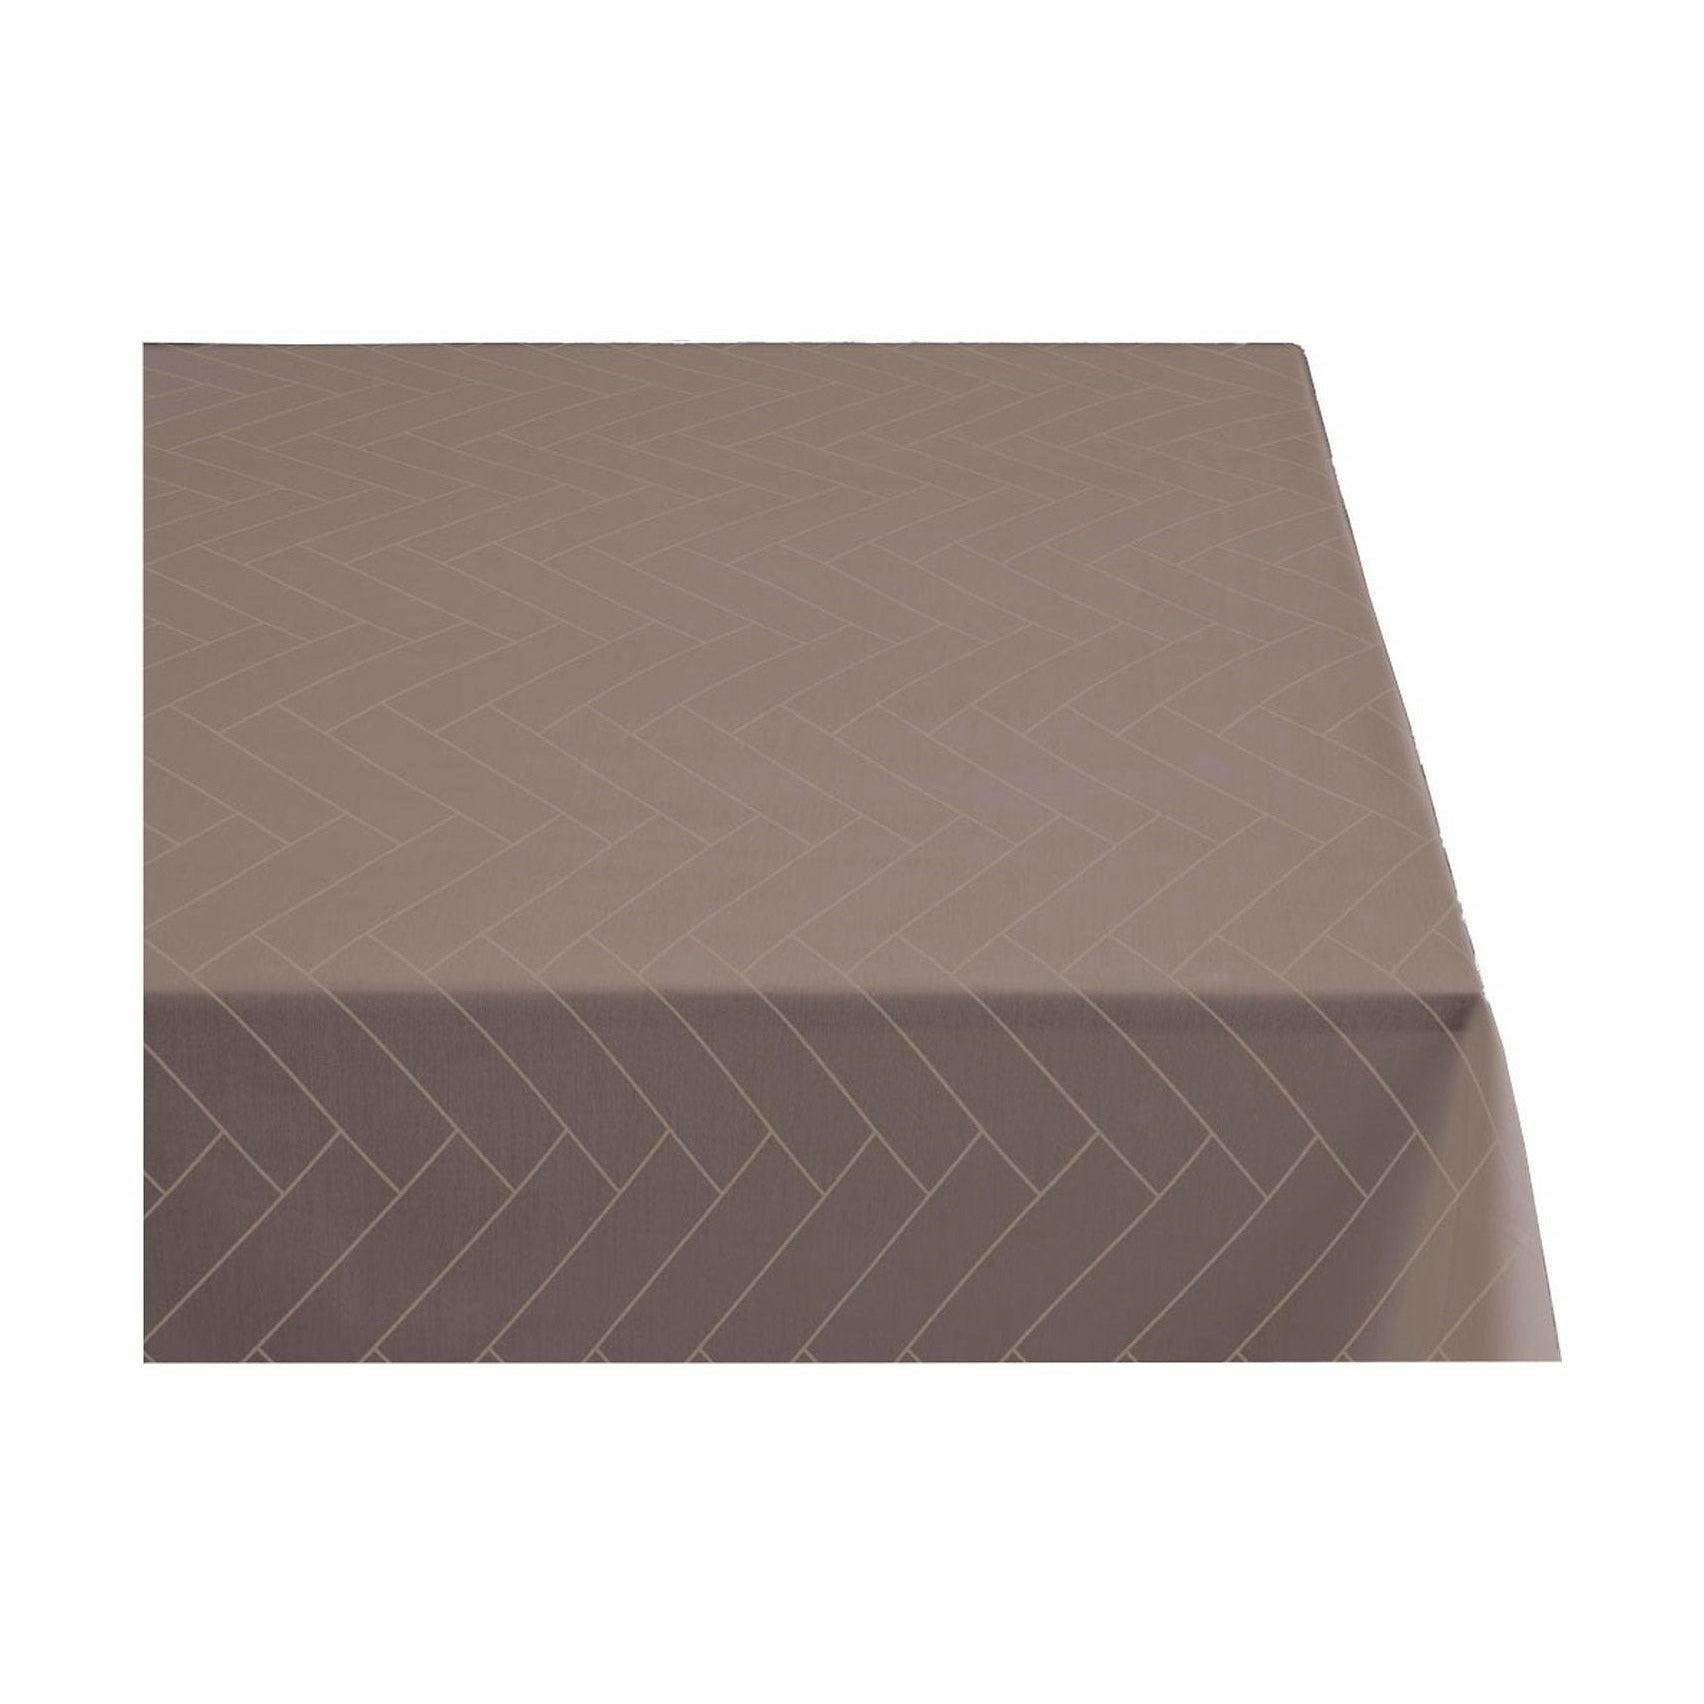 södahl瓷砖damask桌布140x370厘米，灰褐色